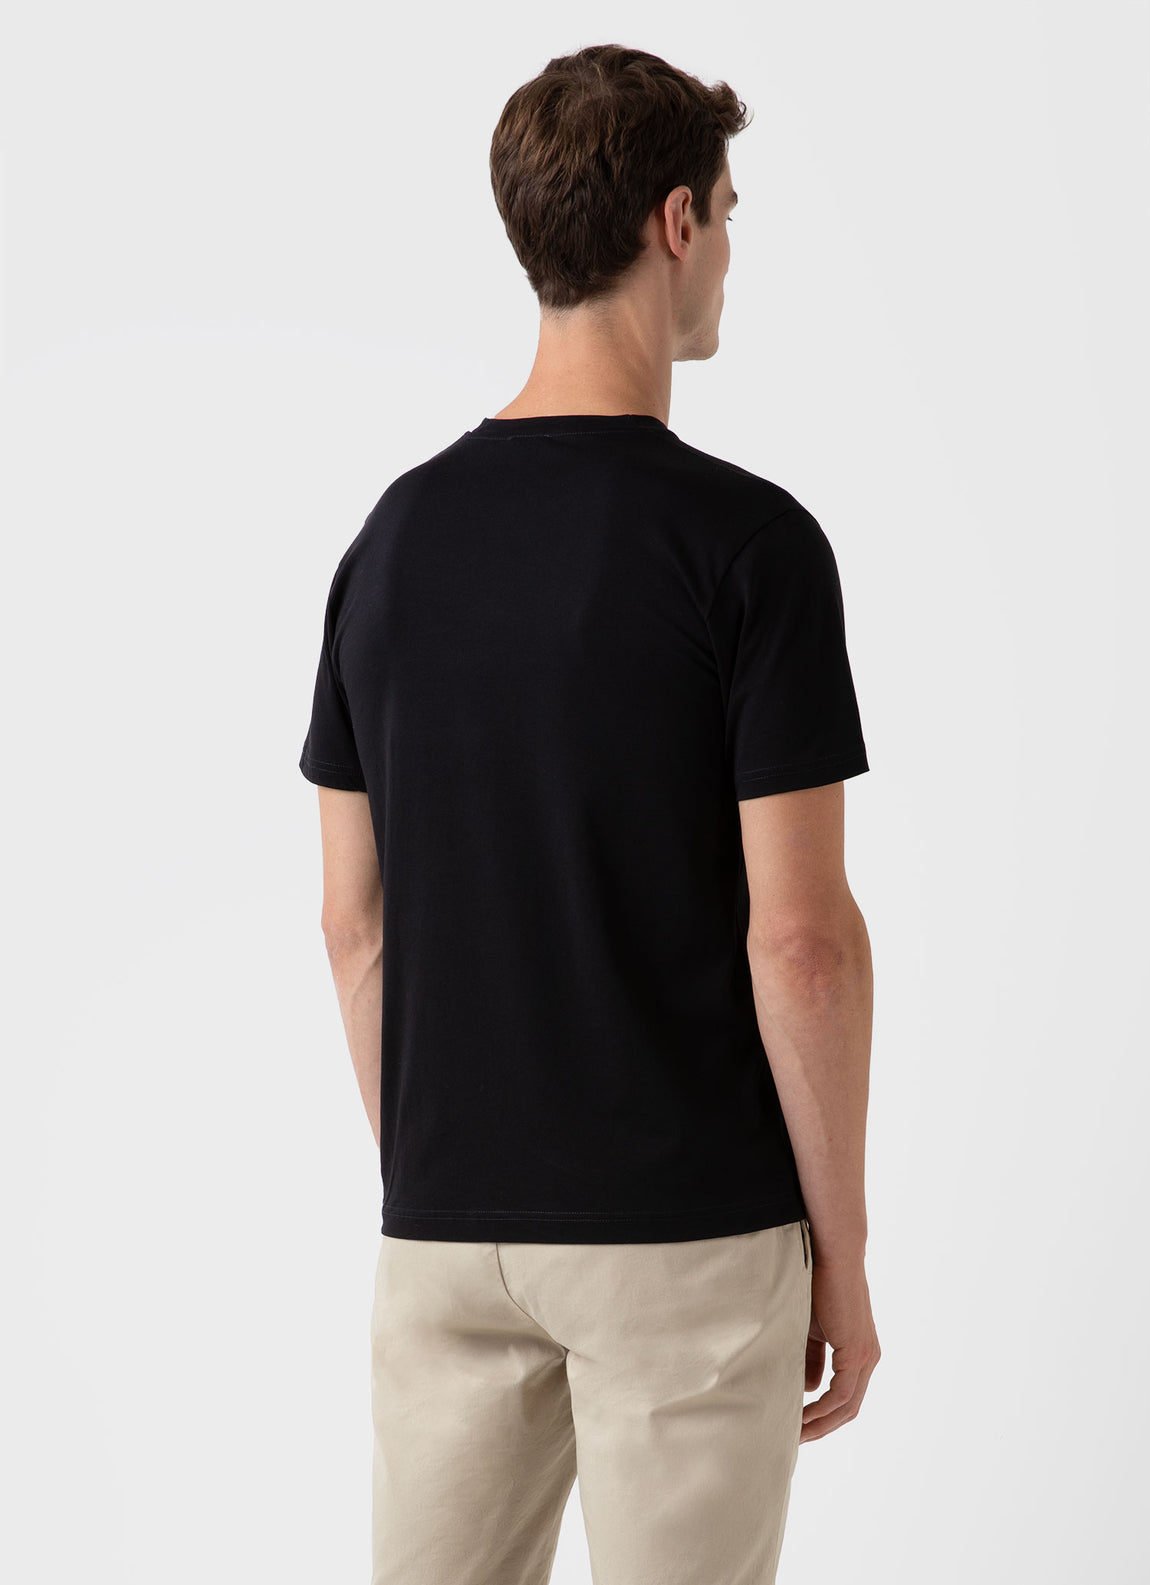 Men's Riviera Midweight Pocket T-shirt in Black | Sunspel